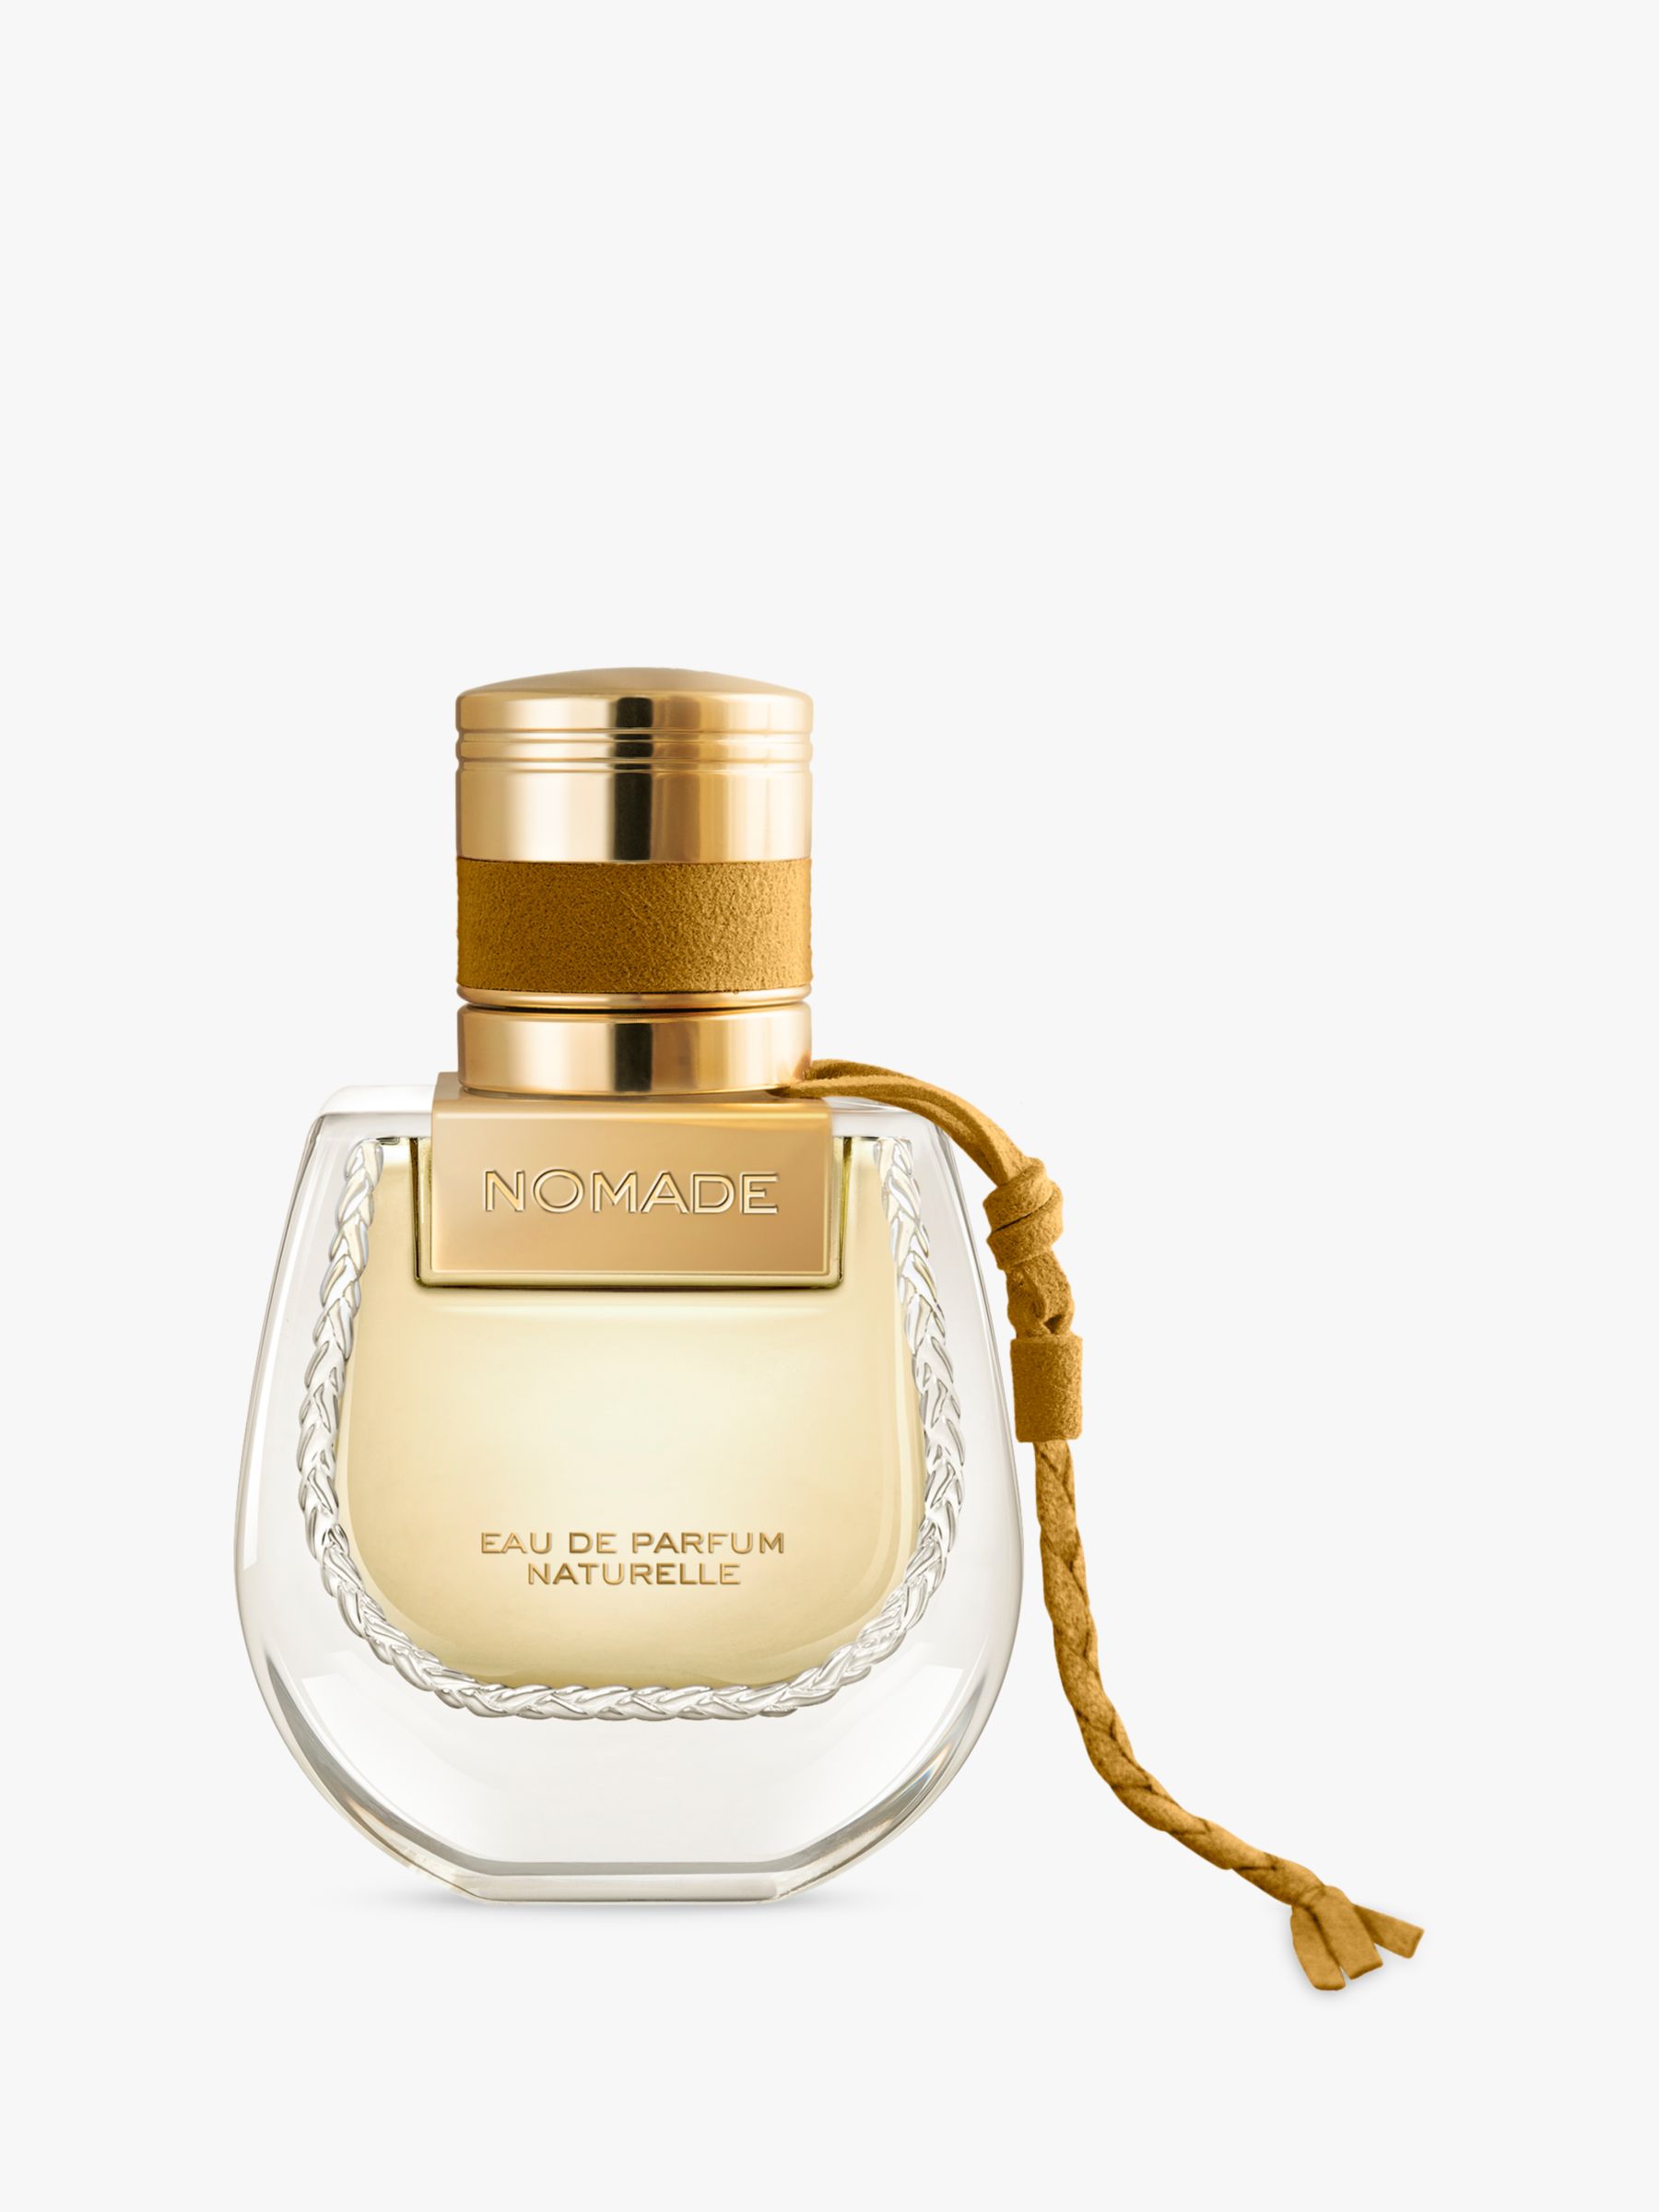 Chloé Nomade Eau de Parfum Naturelle, 30ml at John Lewis & Partners